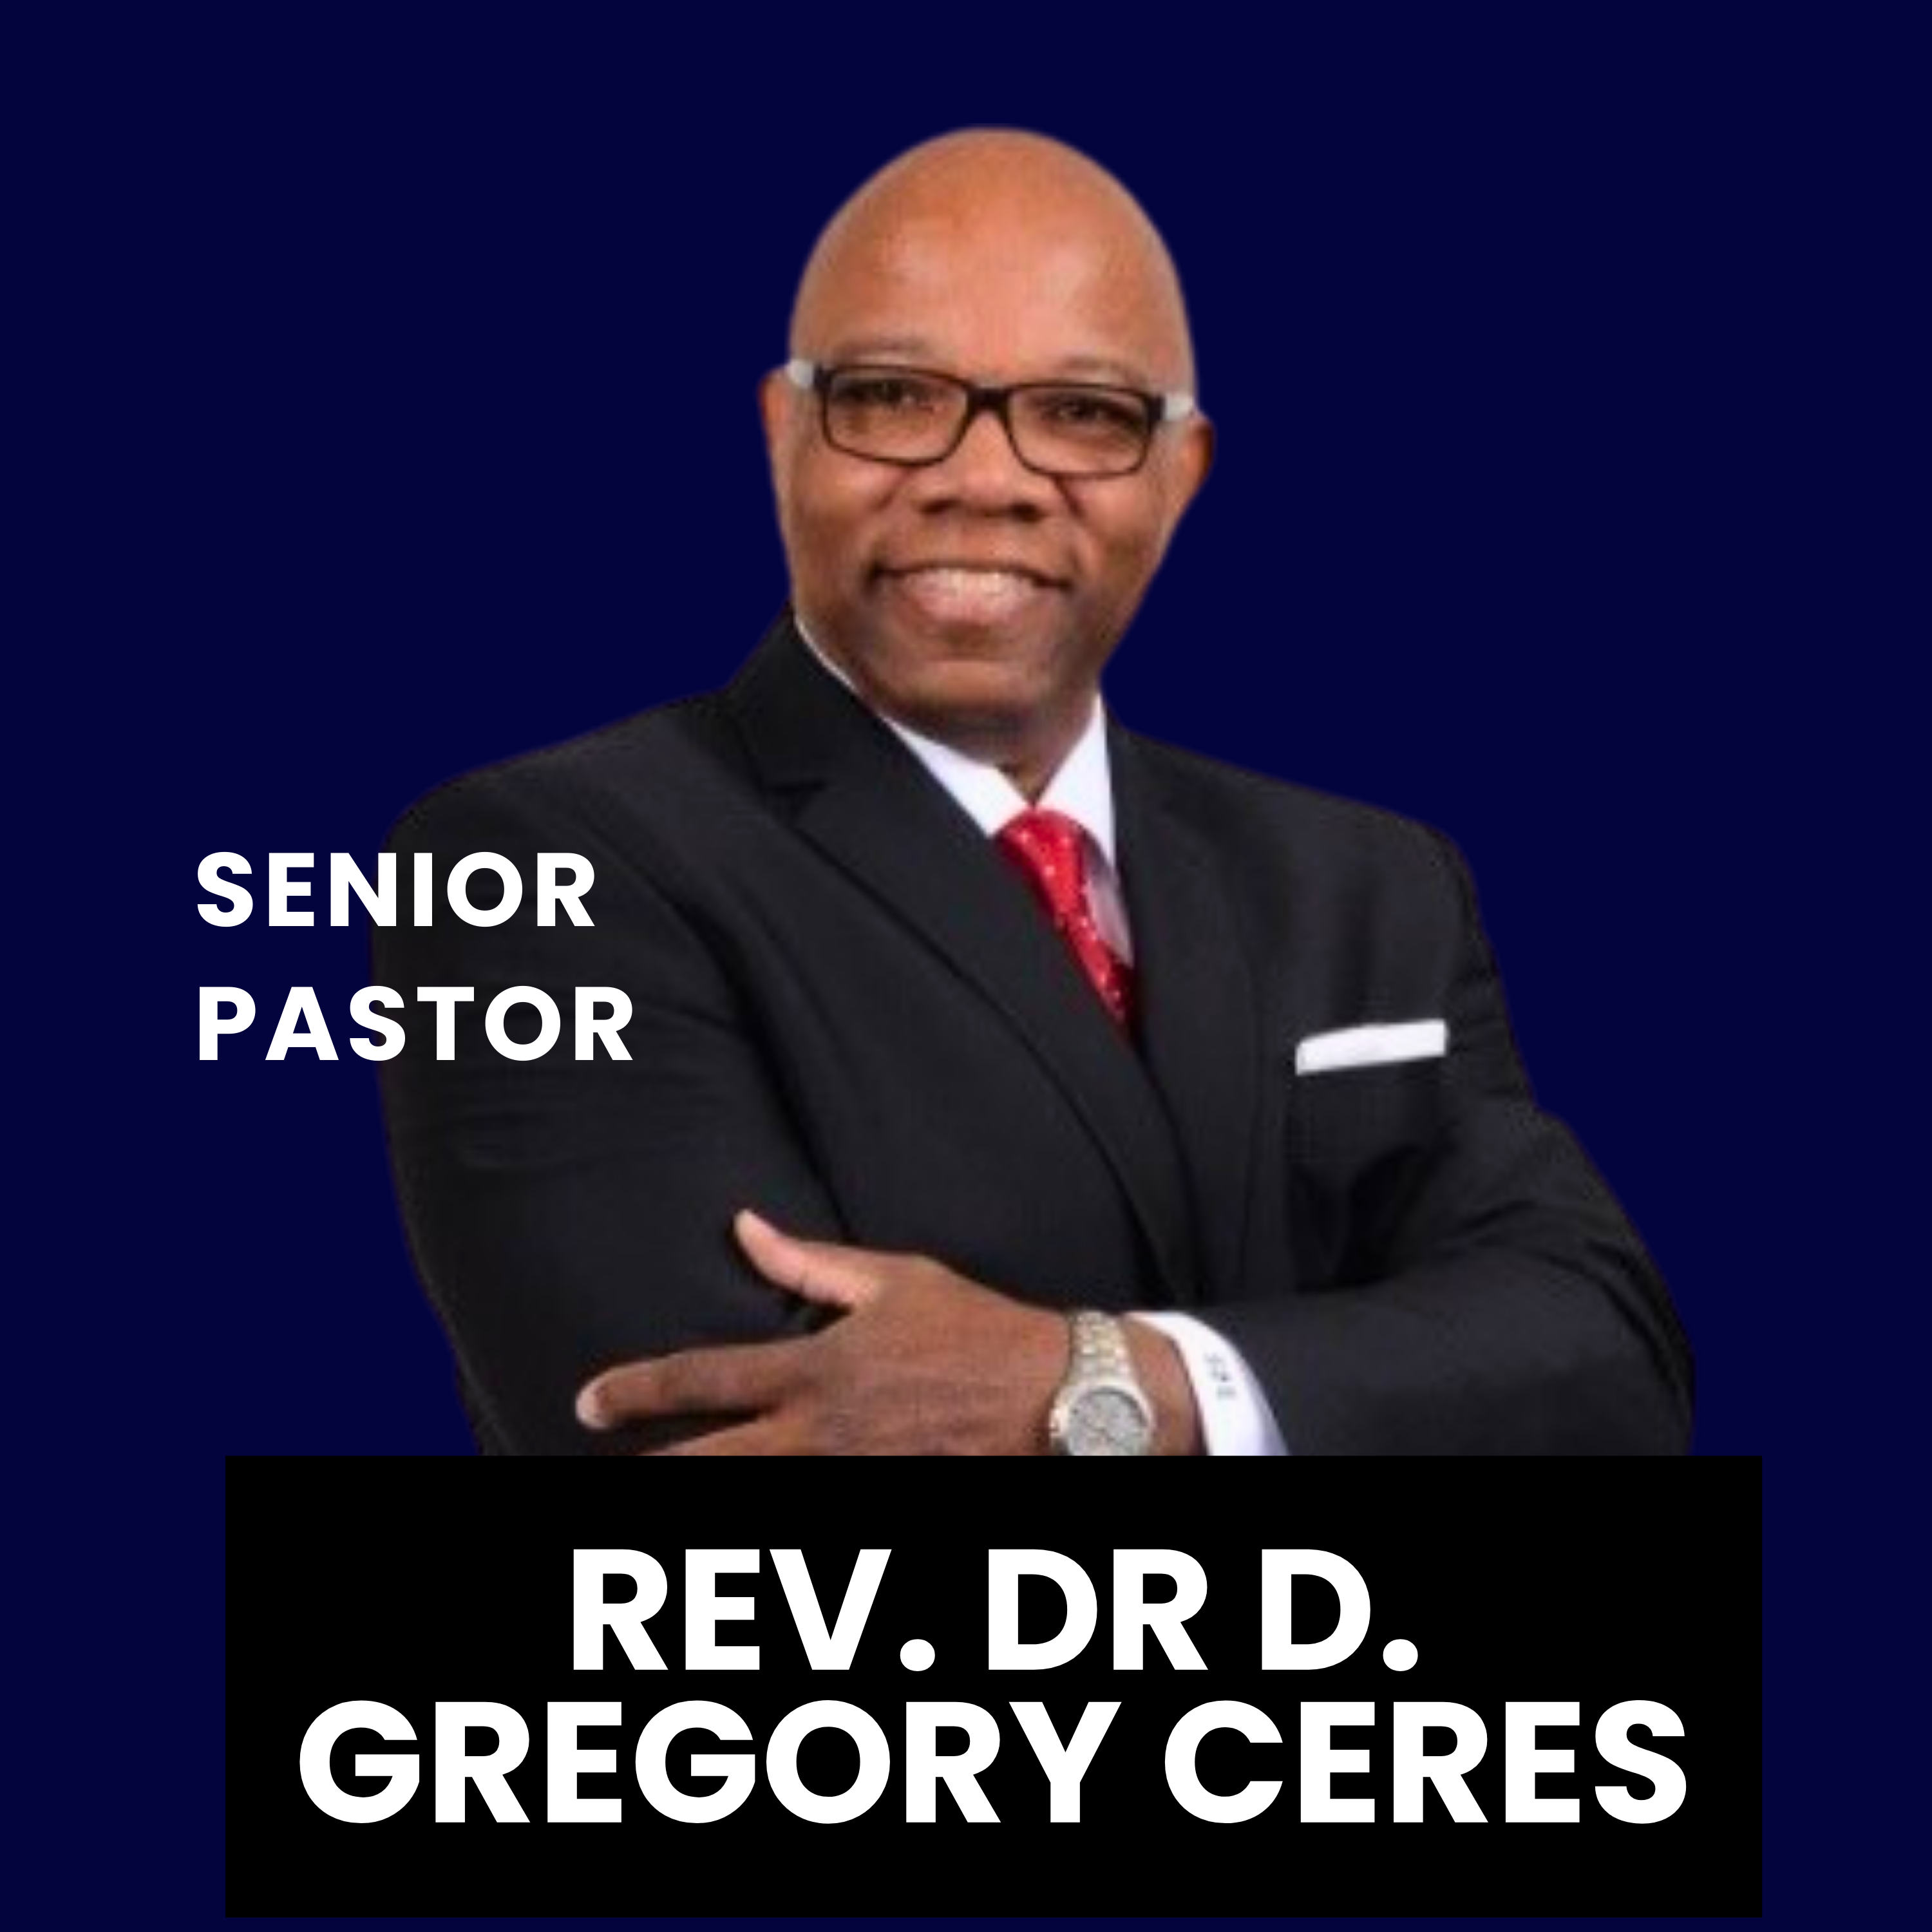 Rev. Dr D. Gregory Ceres